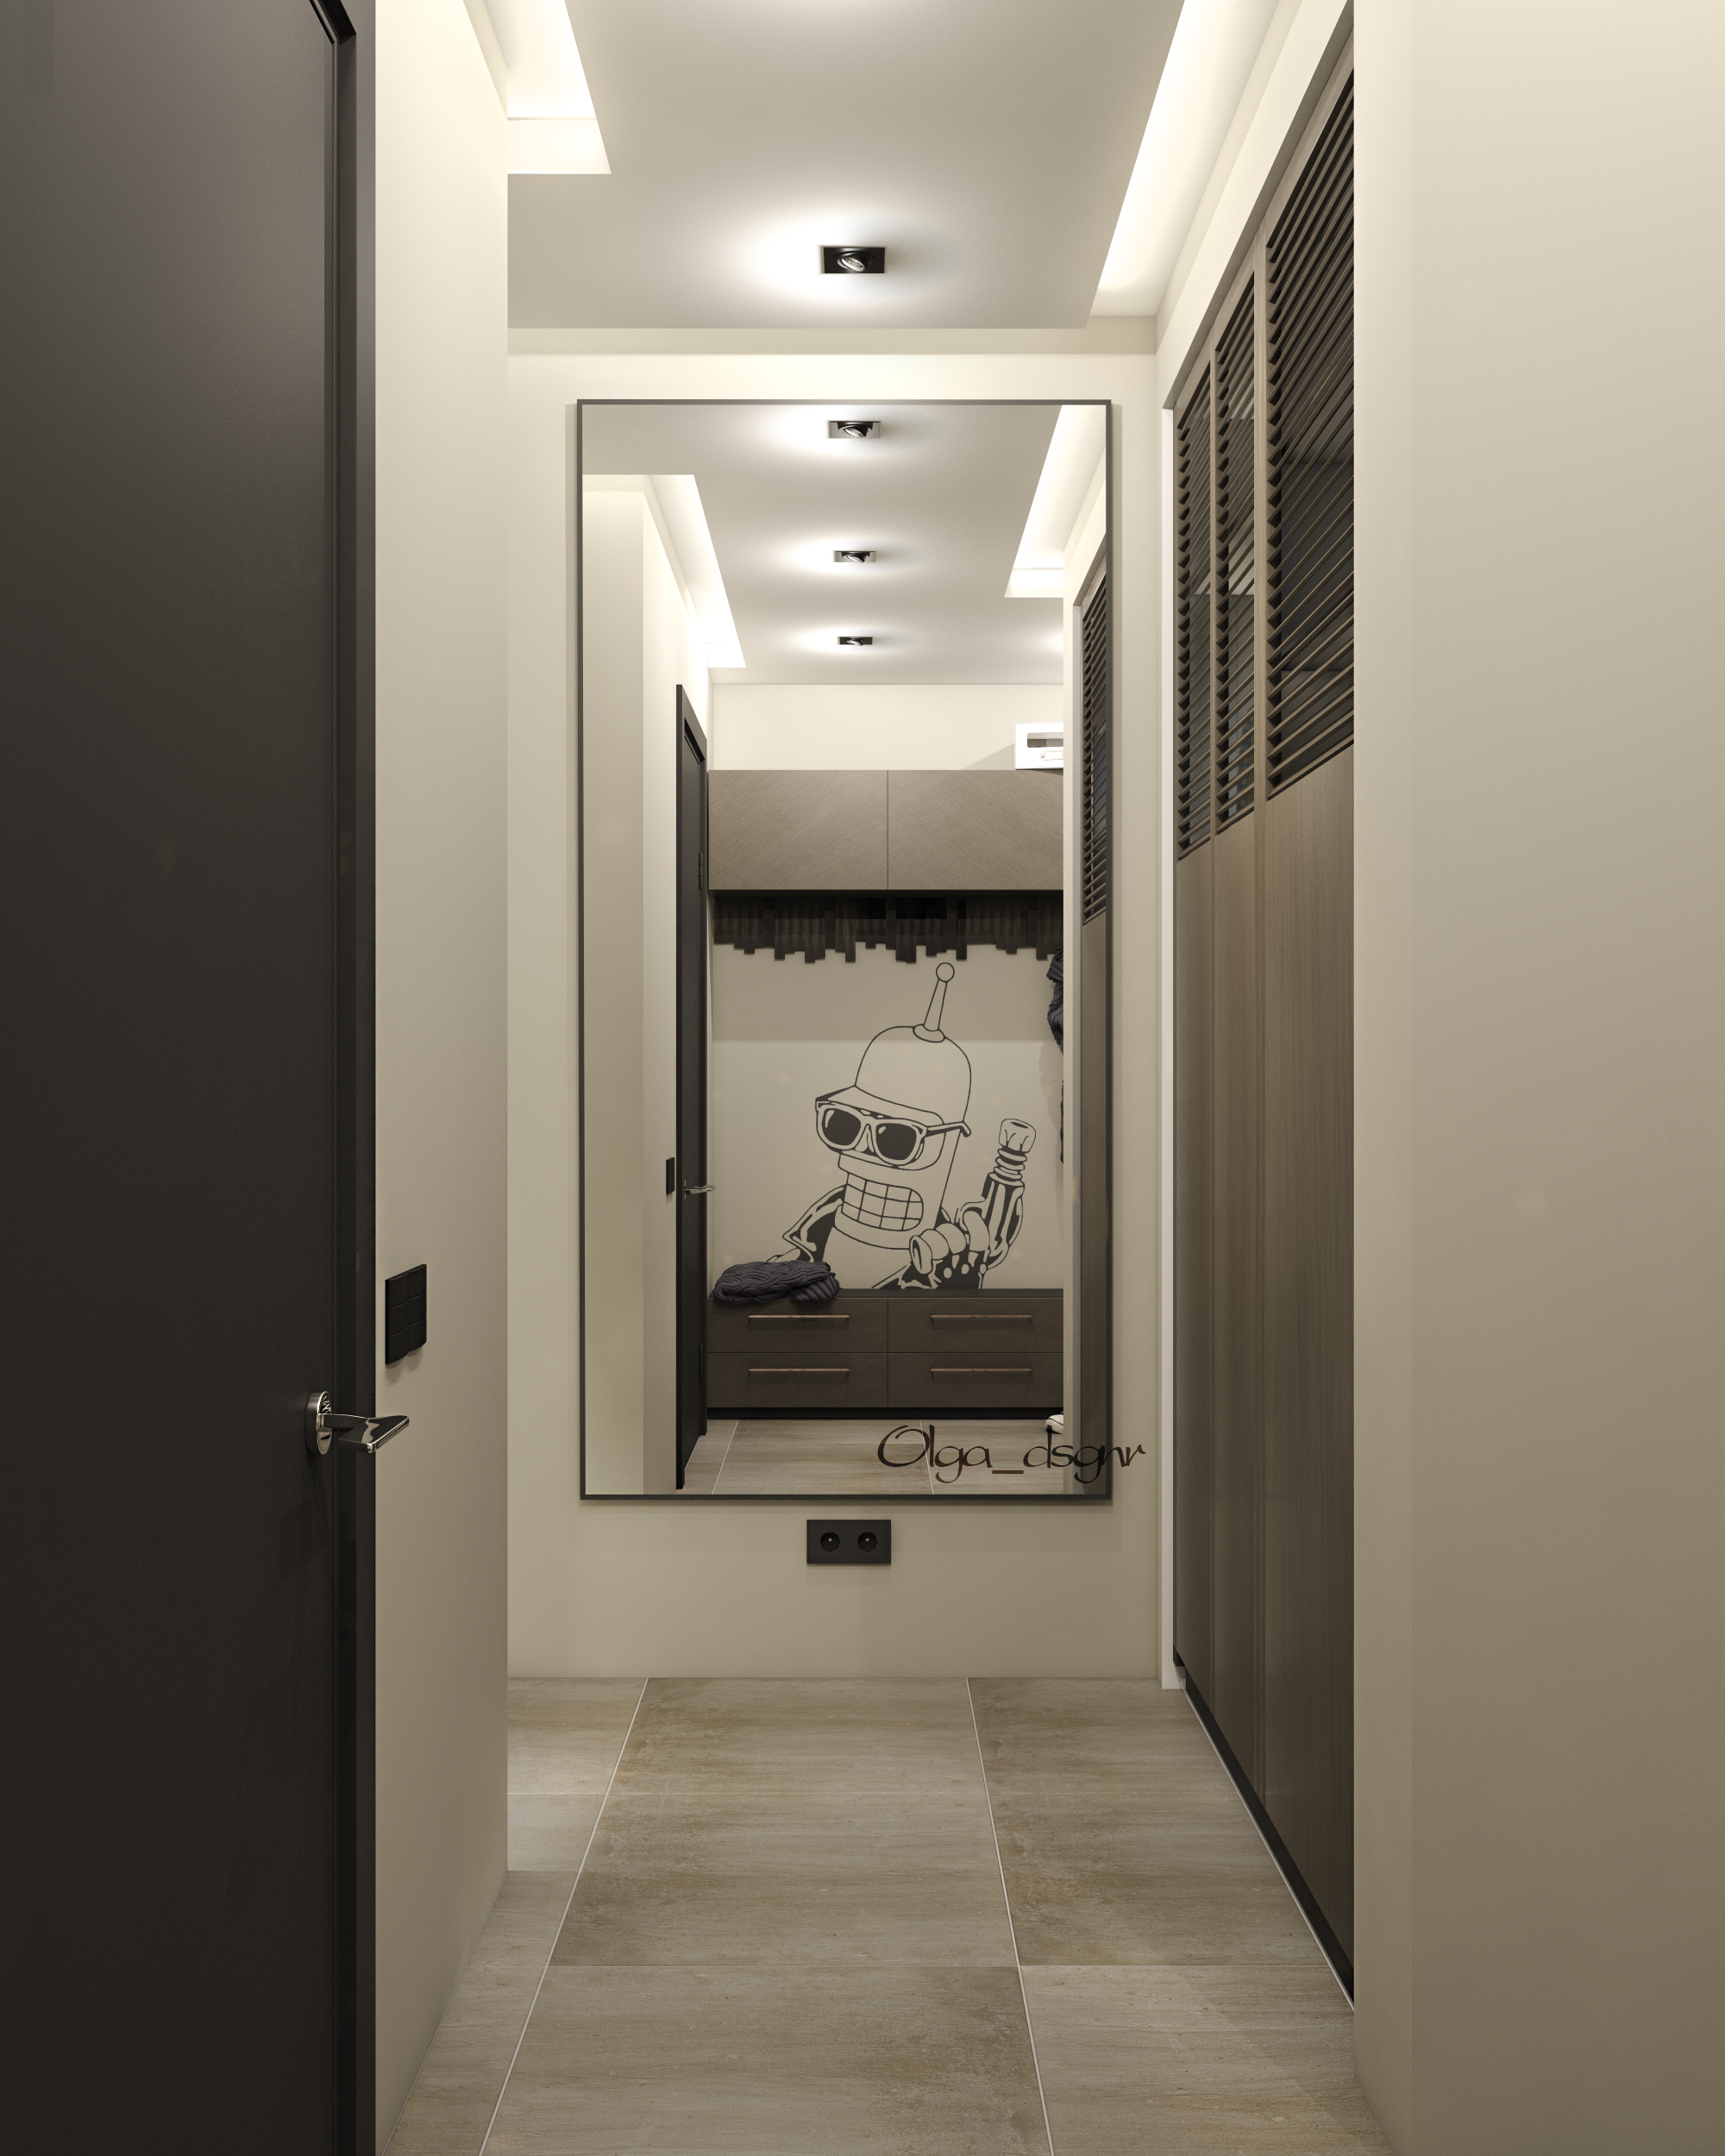 Интерьер коридора с проходной, световыми линиями, зеркалом на двери, рейками с подсветкой, подсветкой настенной, подсветкой светодиодной и с подсветкой